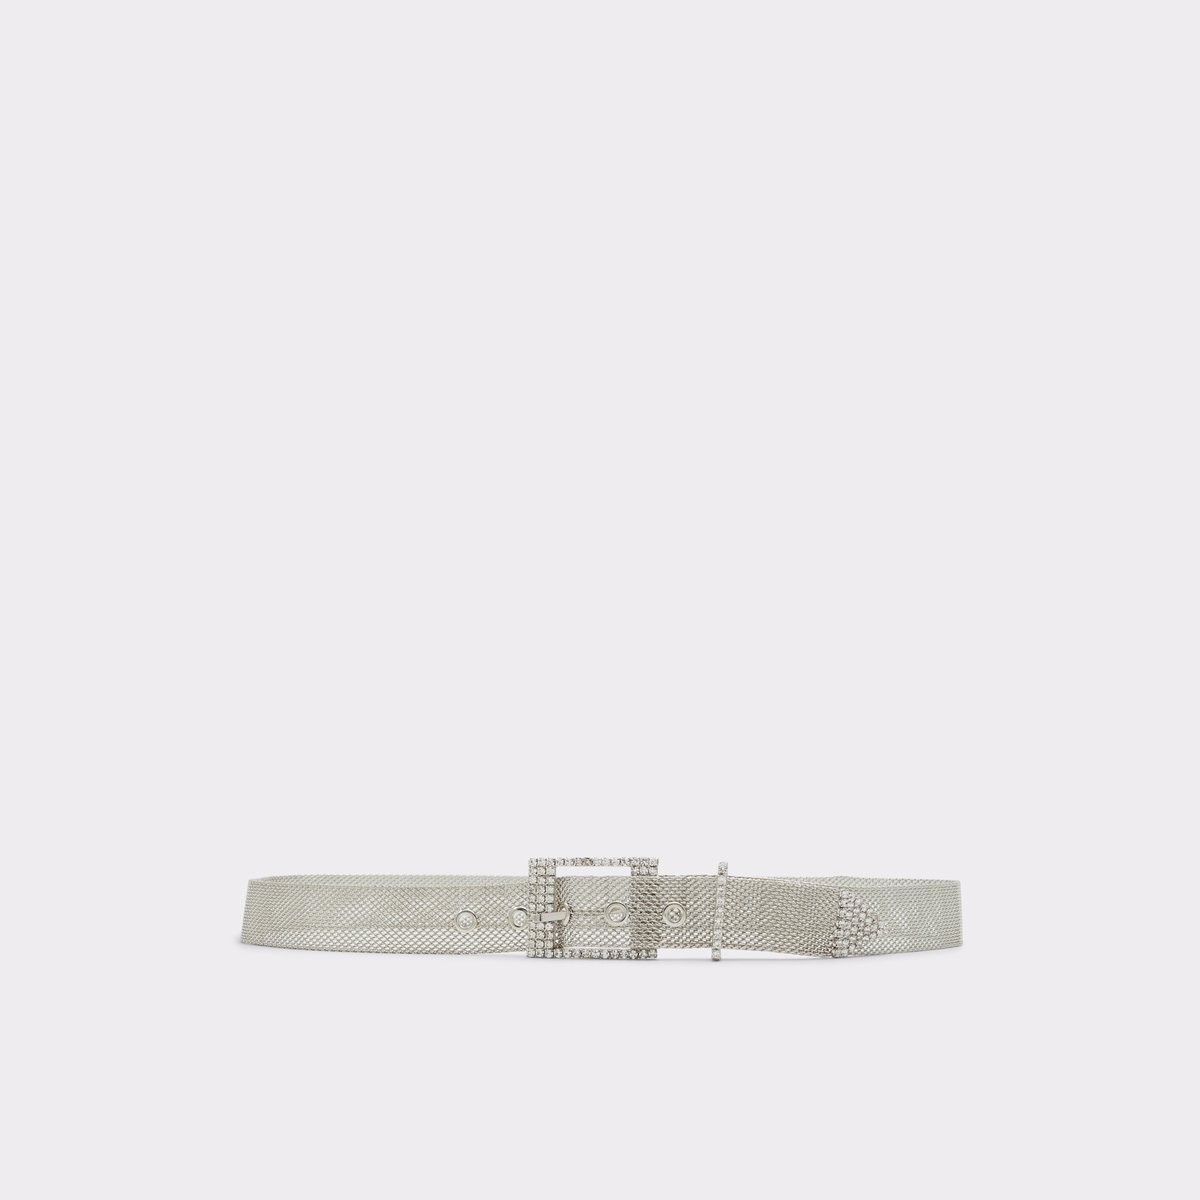 Ibeliwien Silver-Clear Multi Women's Belts | ALDO US